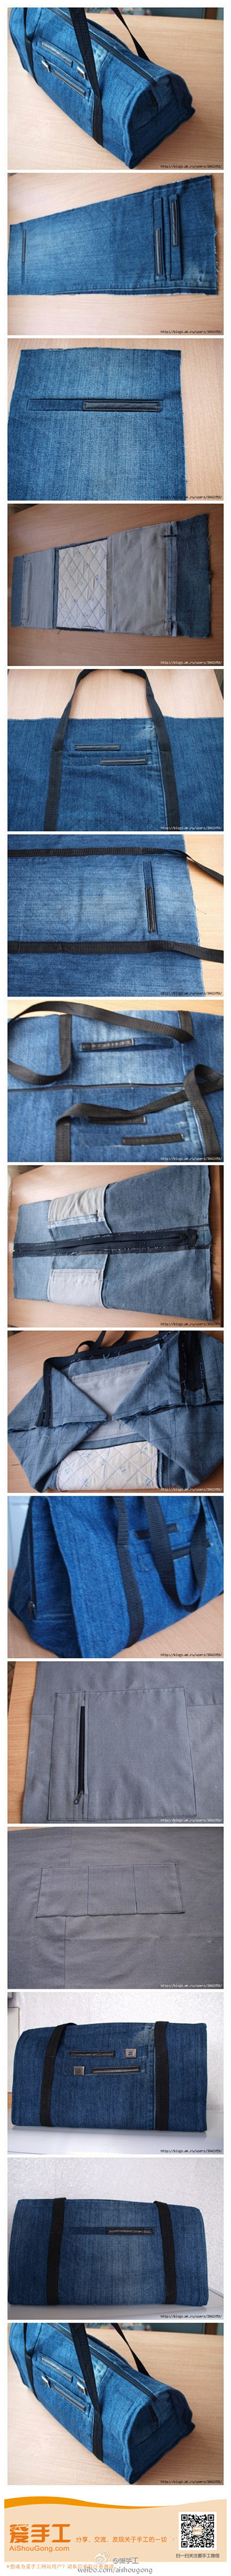 #旧物改造# 牛仔裤巧变旅行袋子。 